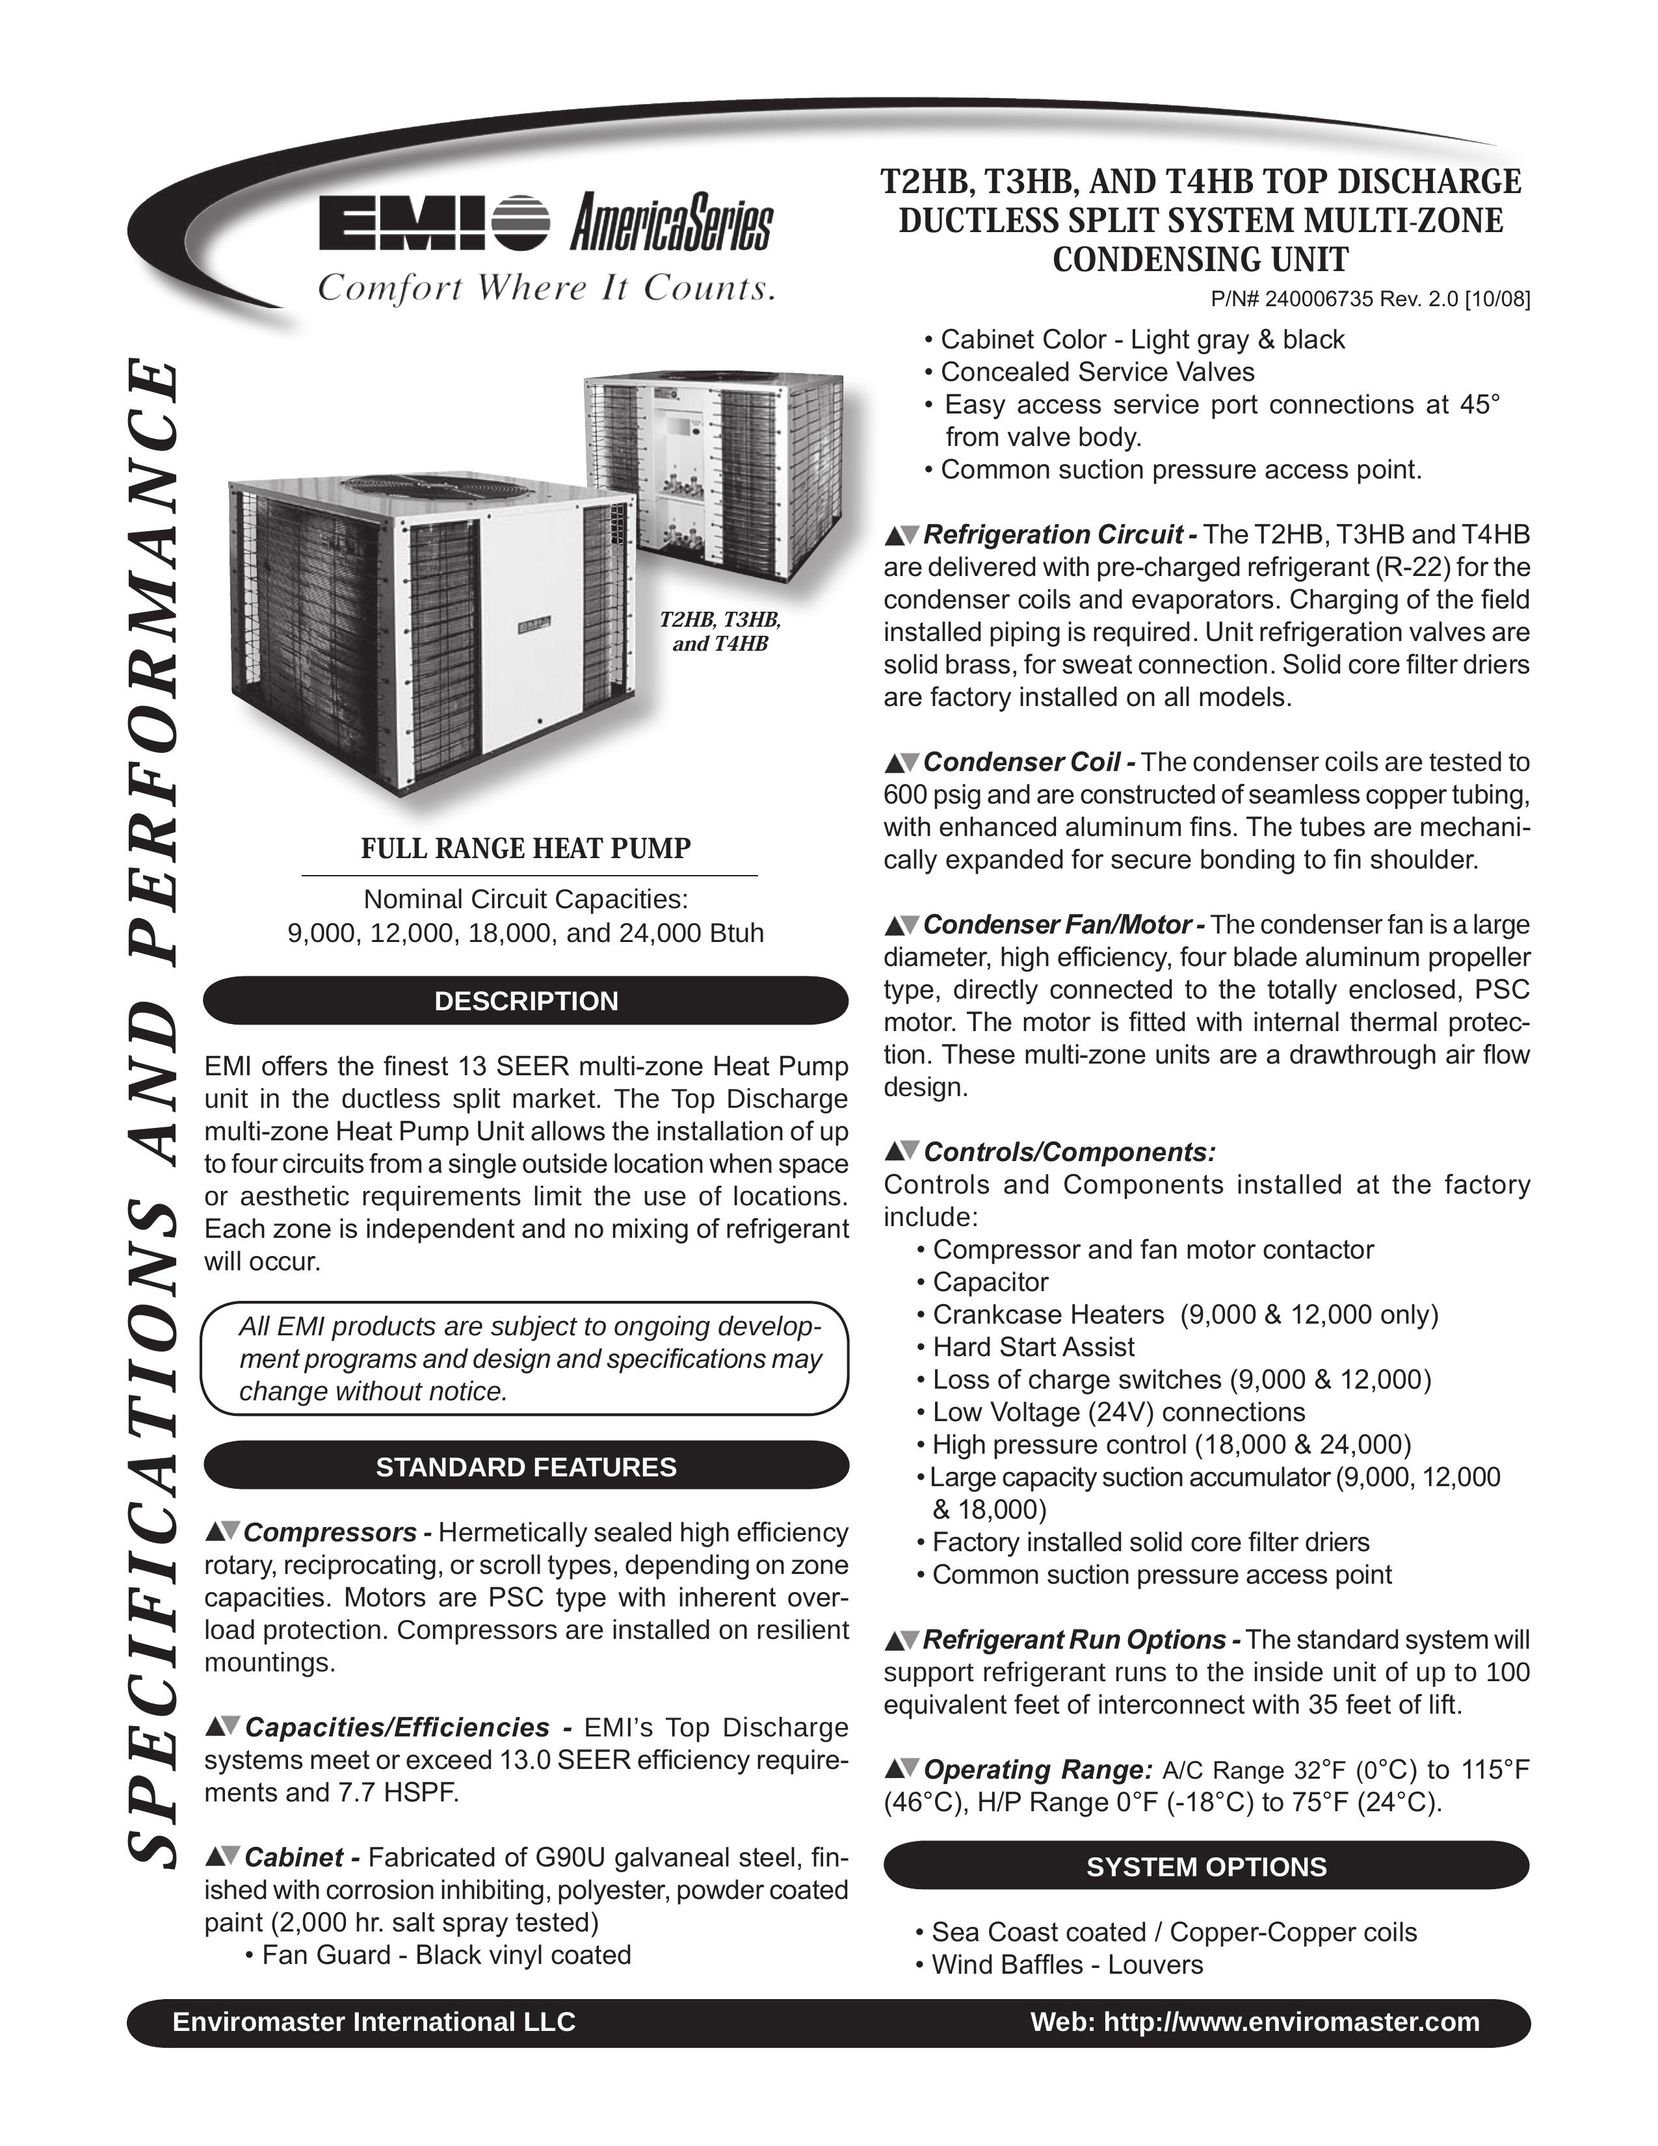 EMI T3HB Heat Pump User Manual